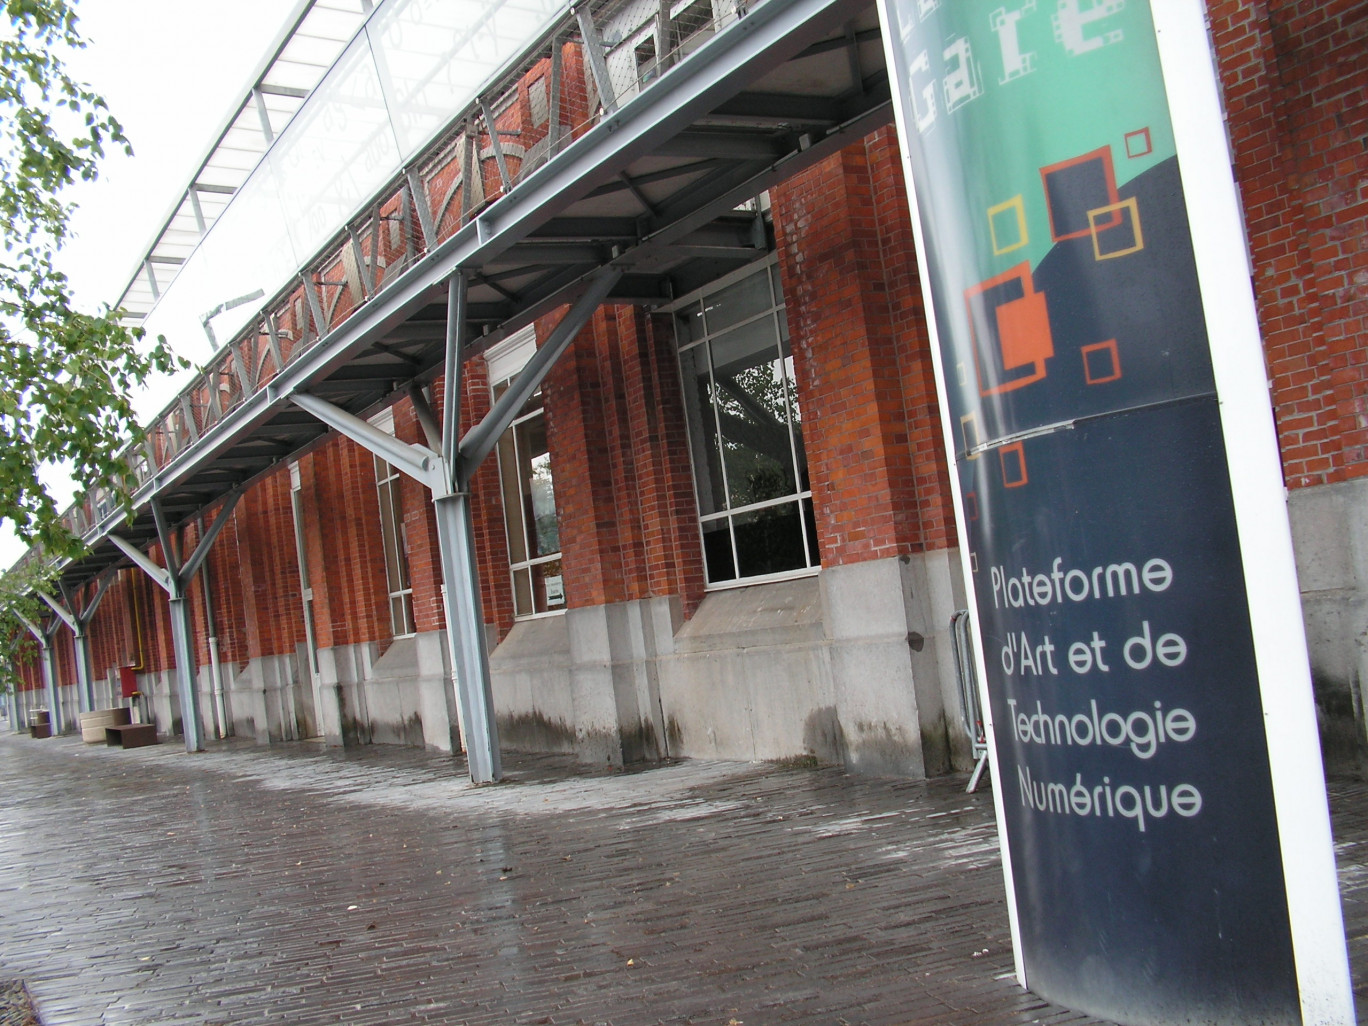 Depuis une vingtaine d’années, la partie de la gare cédée par la SNCF à la ville de Jeumont, se cherchait une vocation dans le numérique et les nouvelles technologies. Une vocation à la fois locale et internationale. Cette orientation, orchestrée par l’intercommunalité, a donc l’air de se préciser.